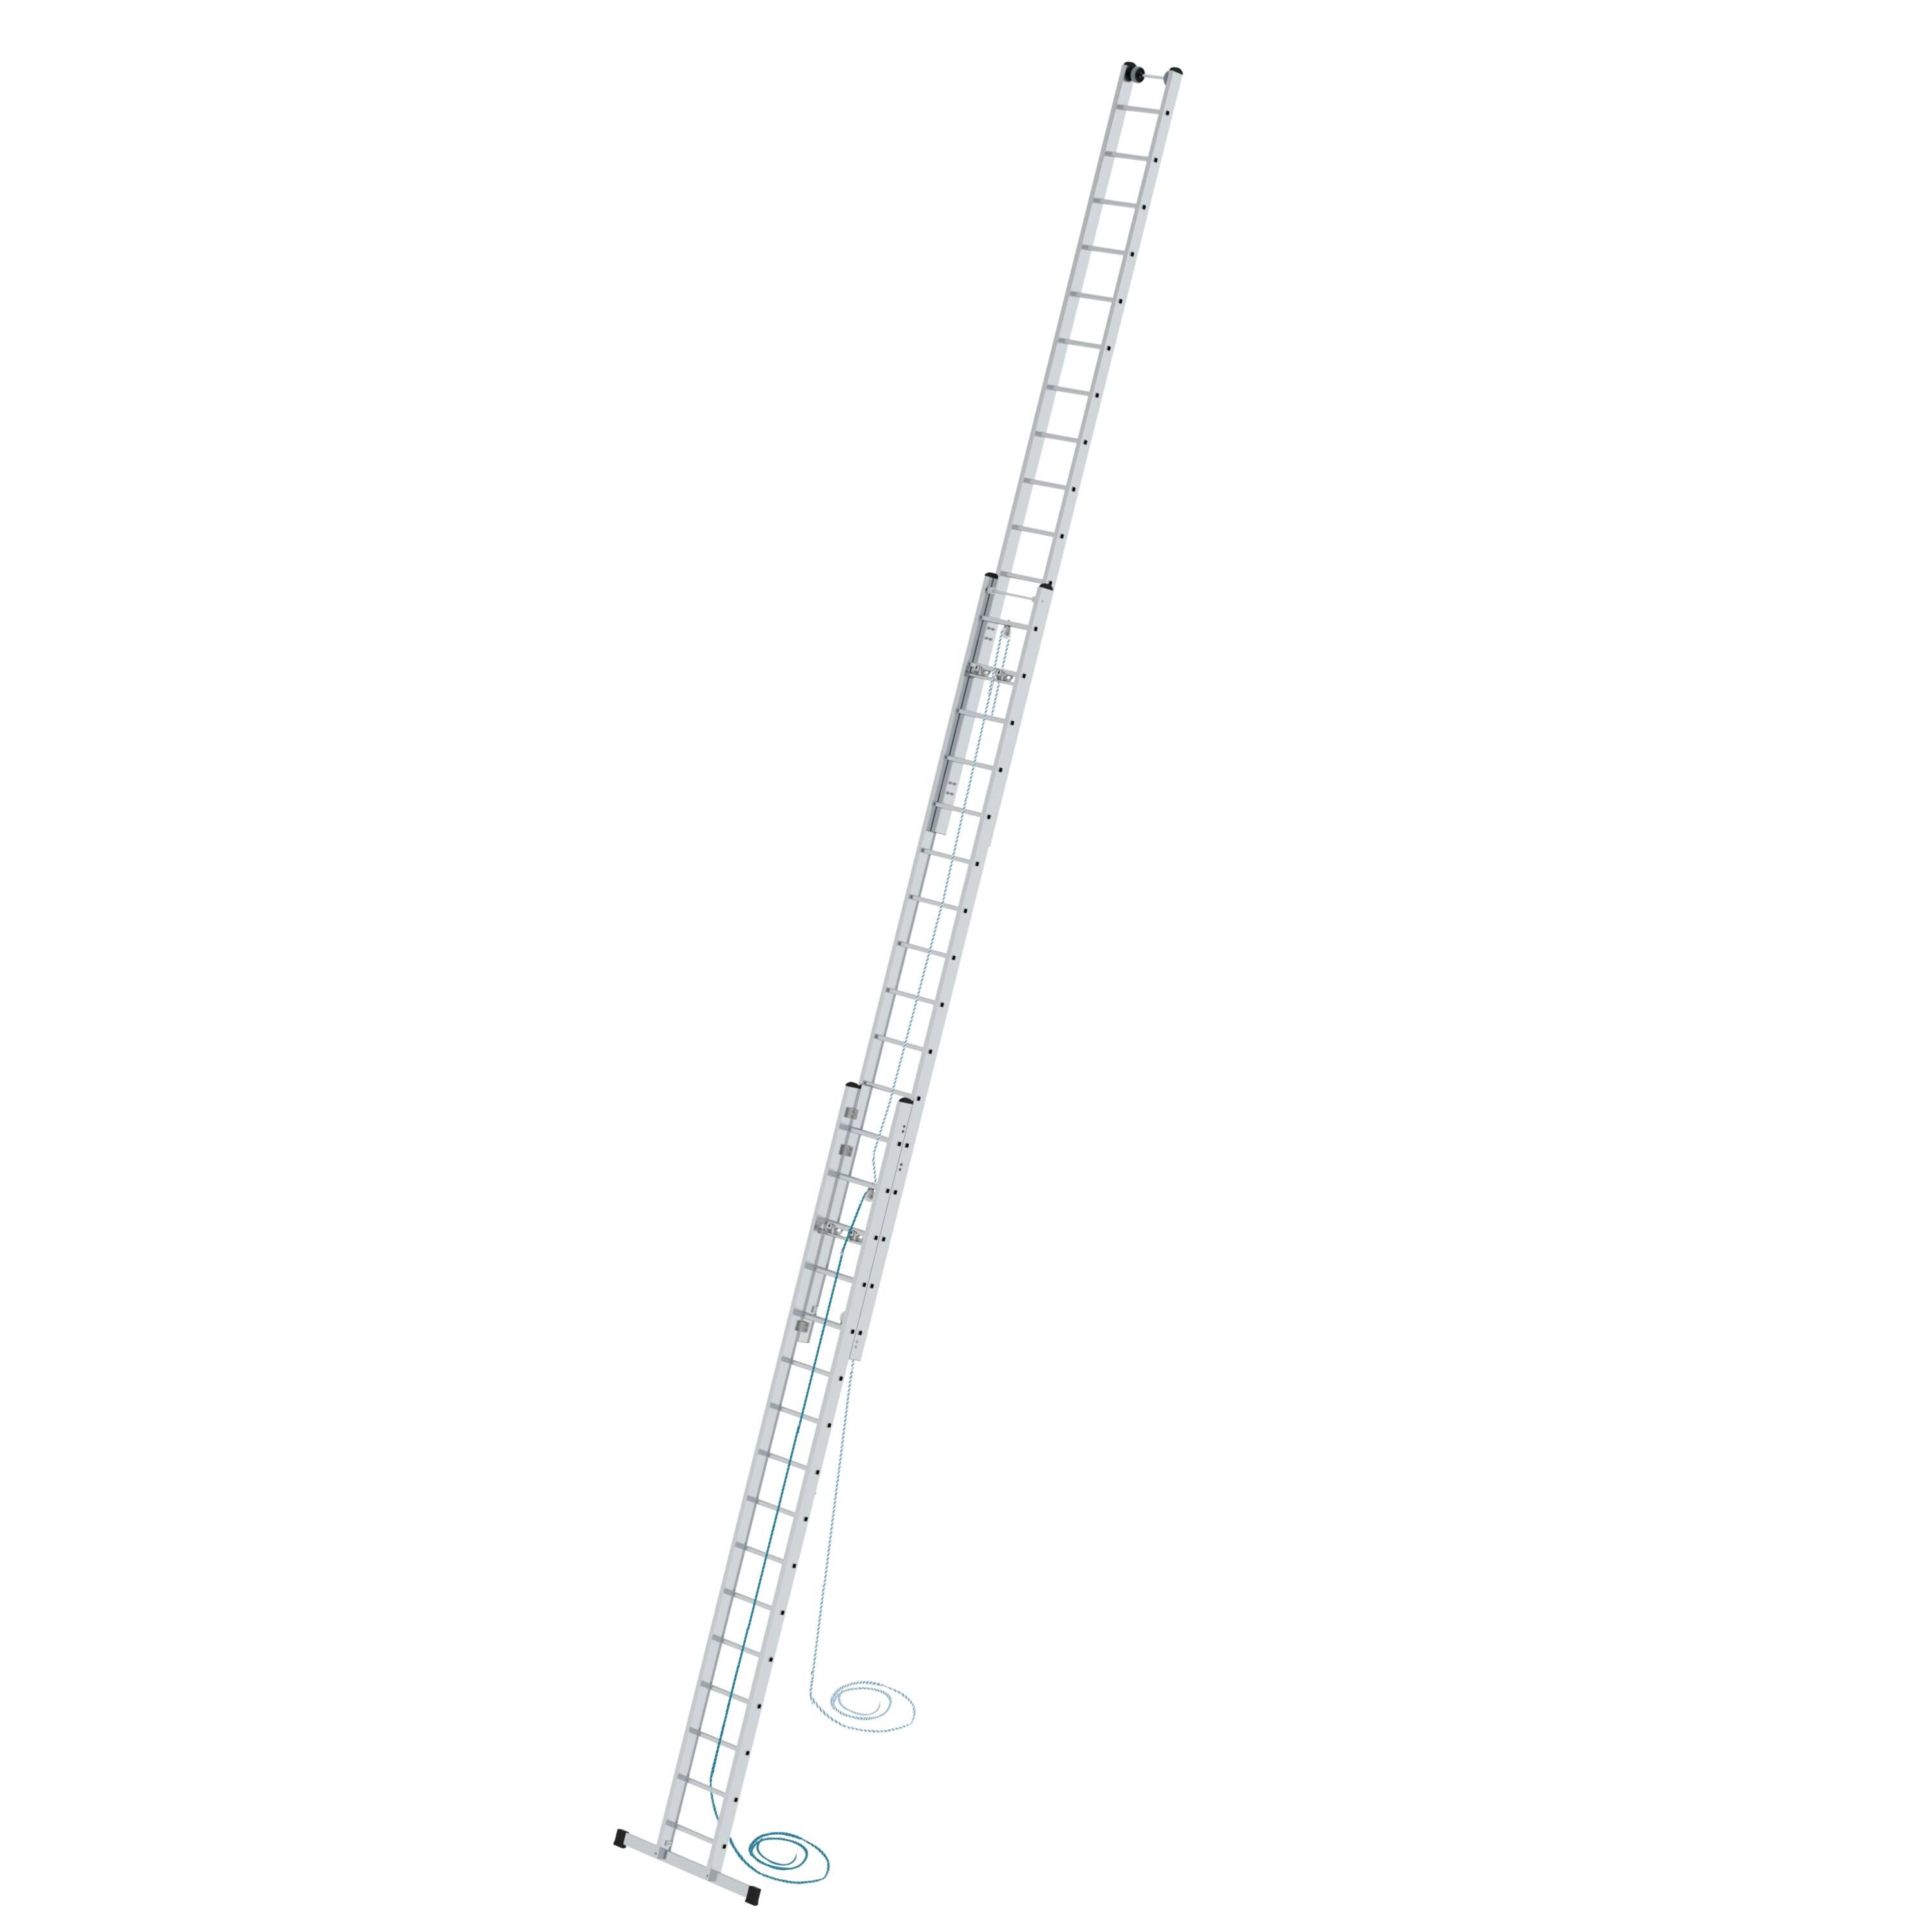 Sprossen-Seilzugleiter 3-teilig mit Standard-Traverse 3x16 Sprossen